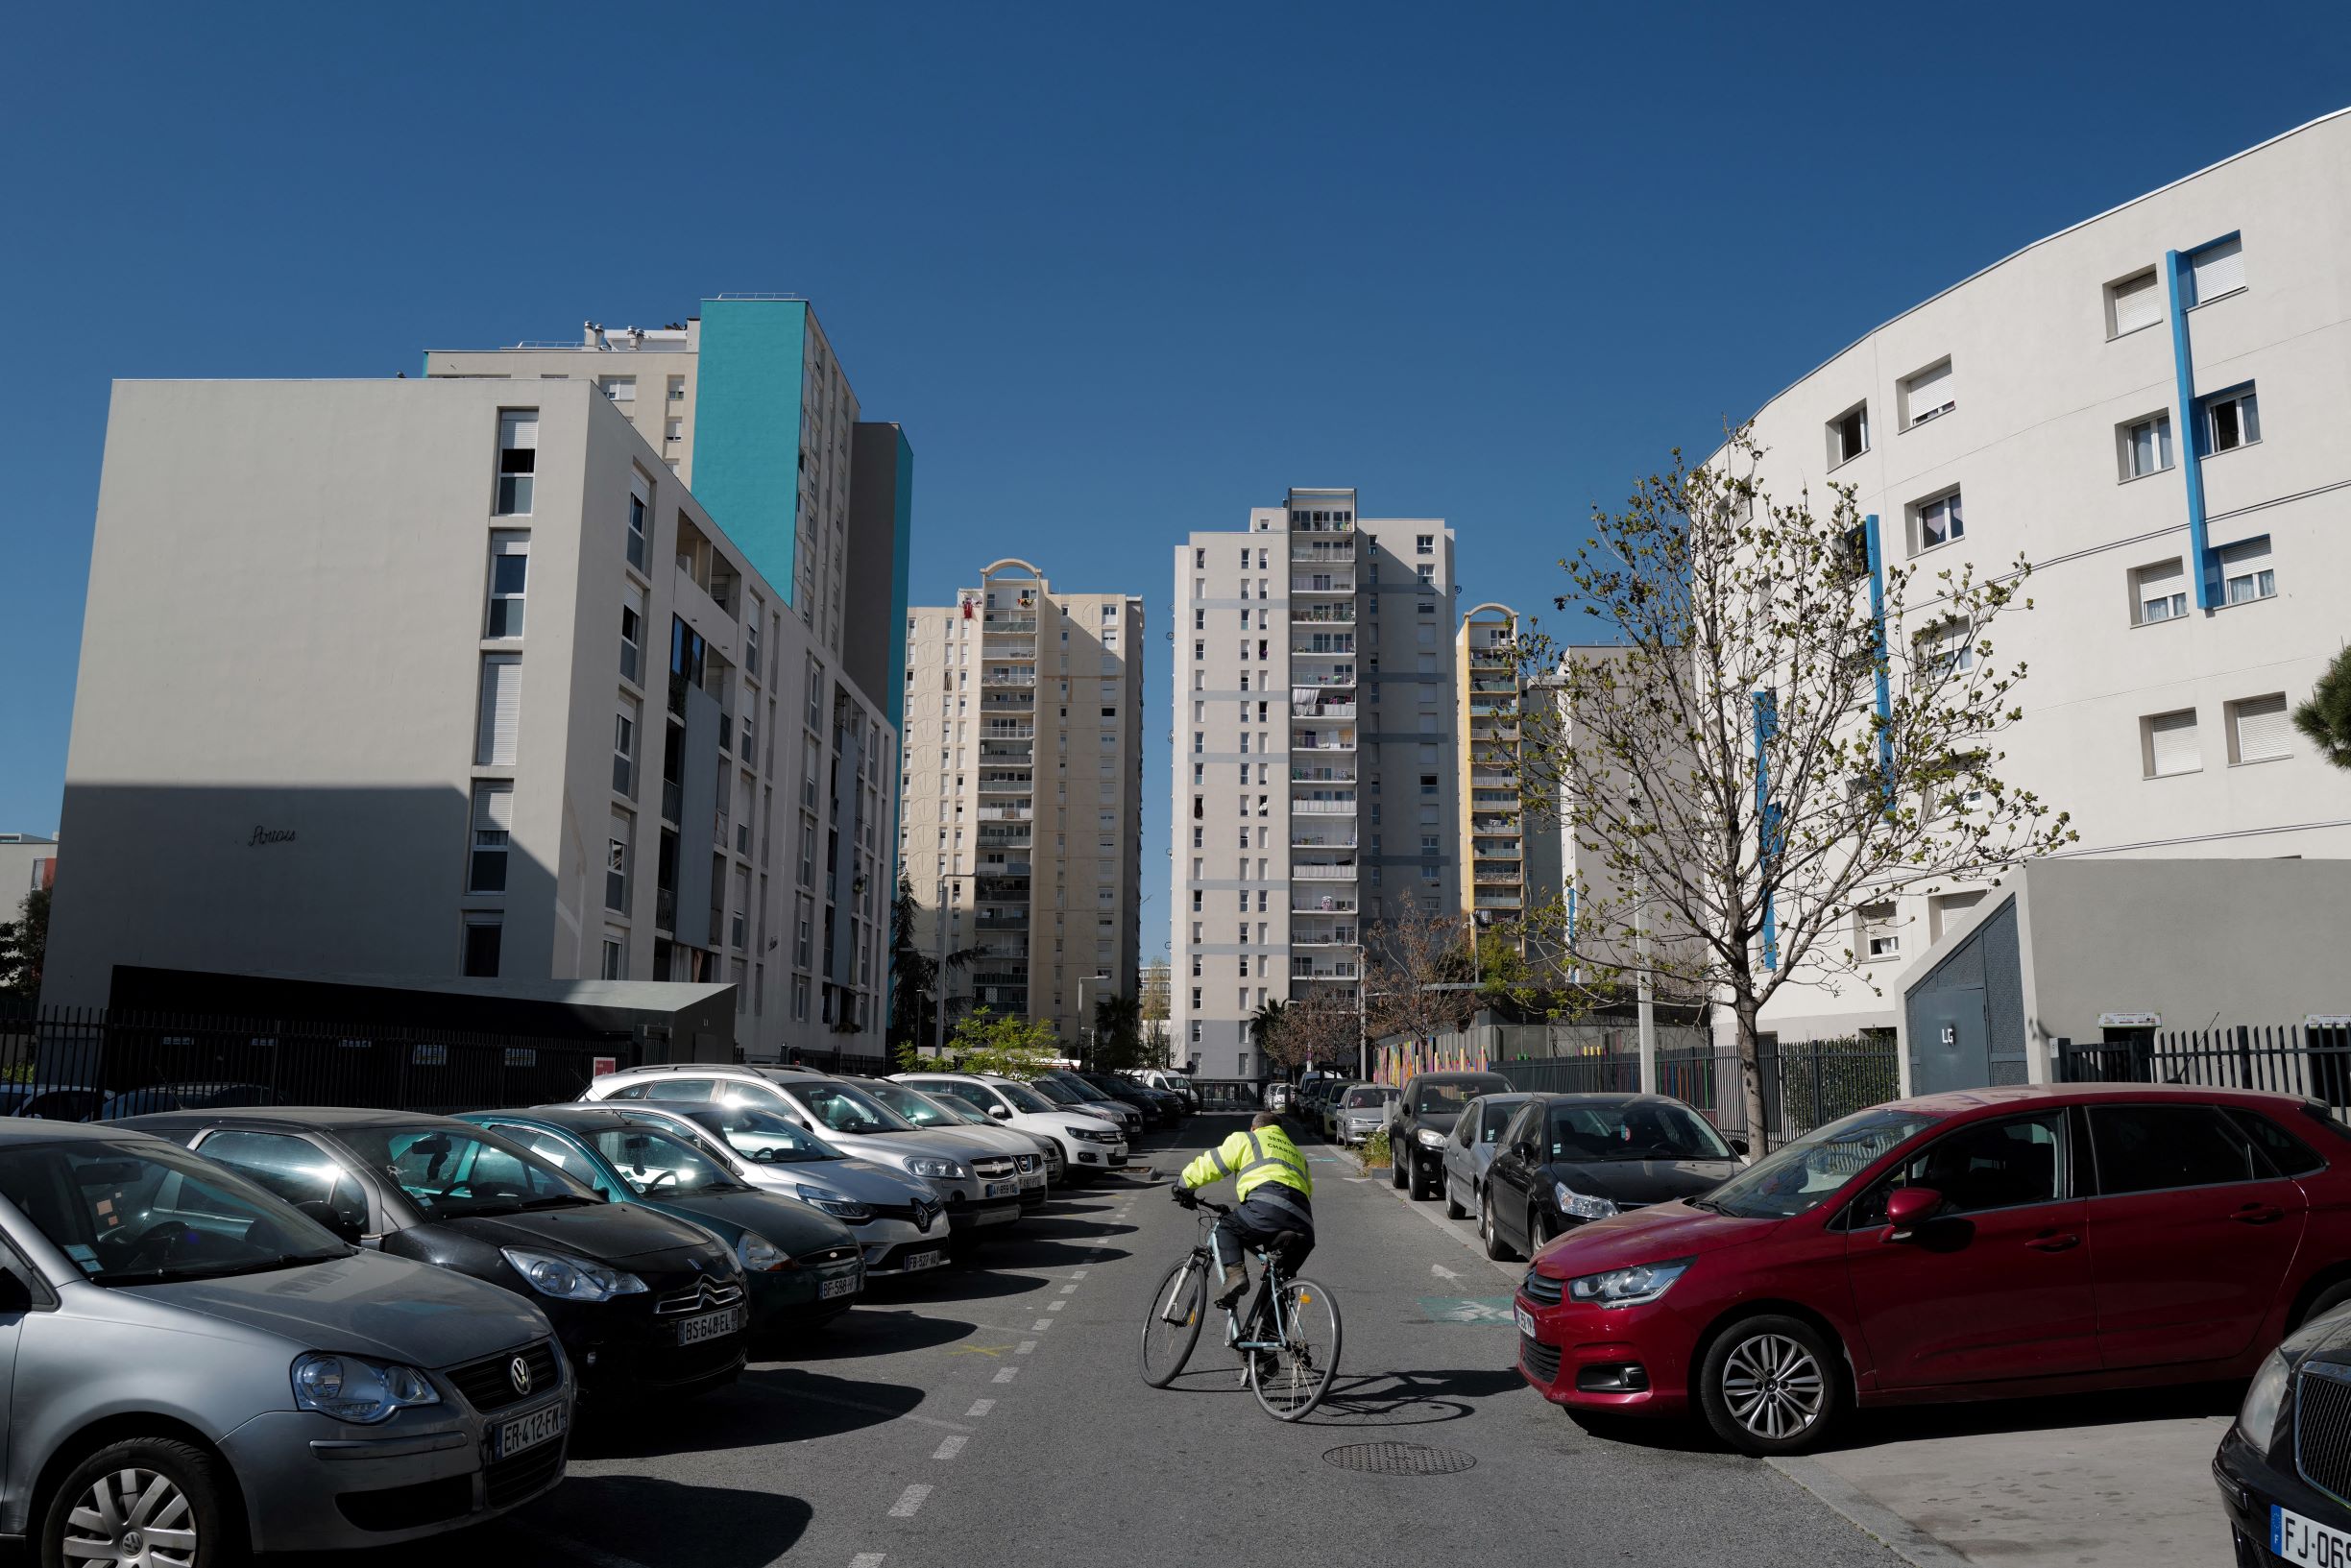 Trafic de drogue à Nice : les futurs agents de sécurité privés armés de gaz lacrymogène et de bâton de défense